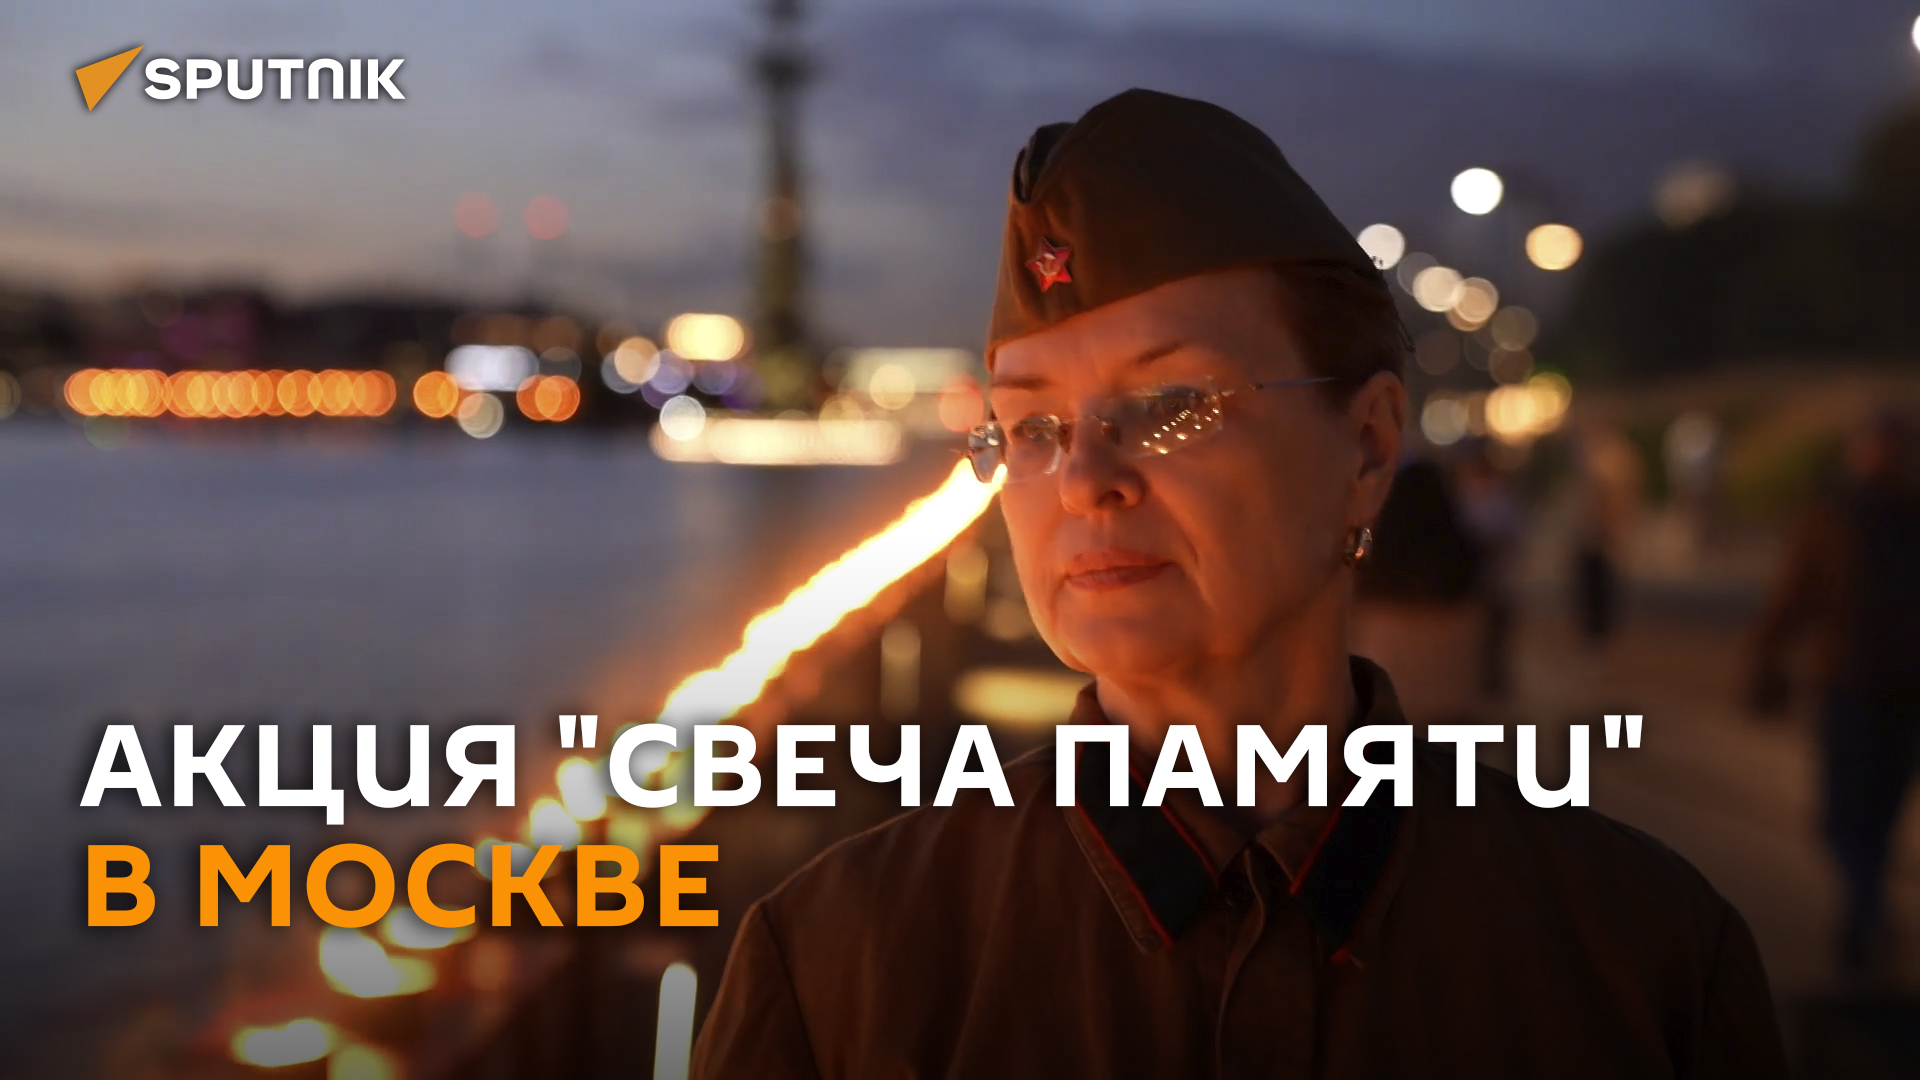 Акция "Свеча памяти" к годовщине начала войны прошла в Москве